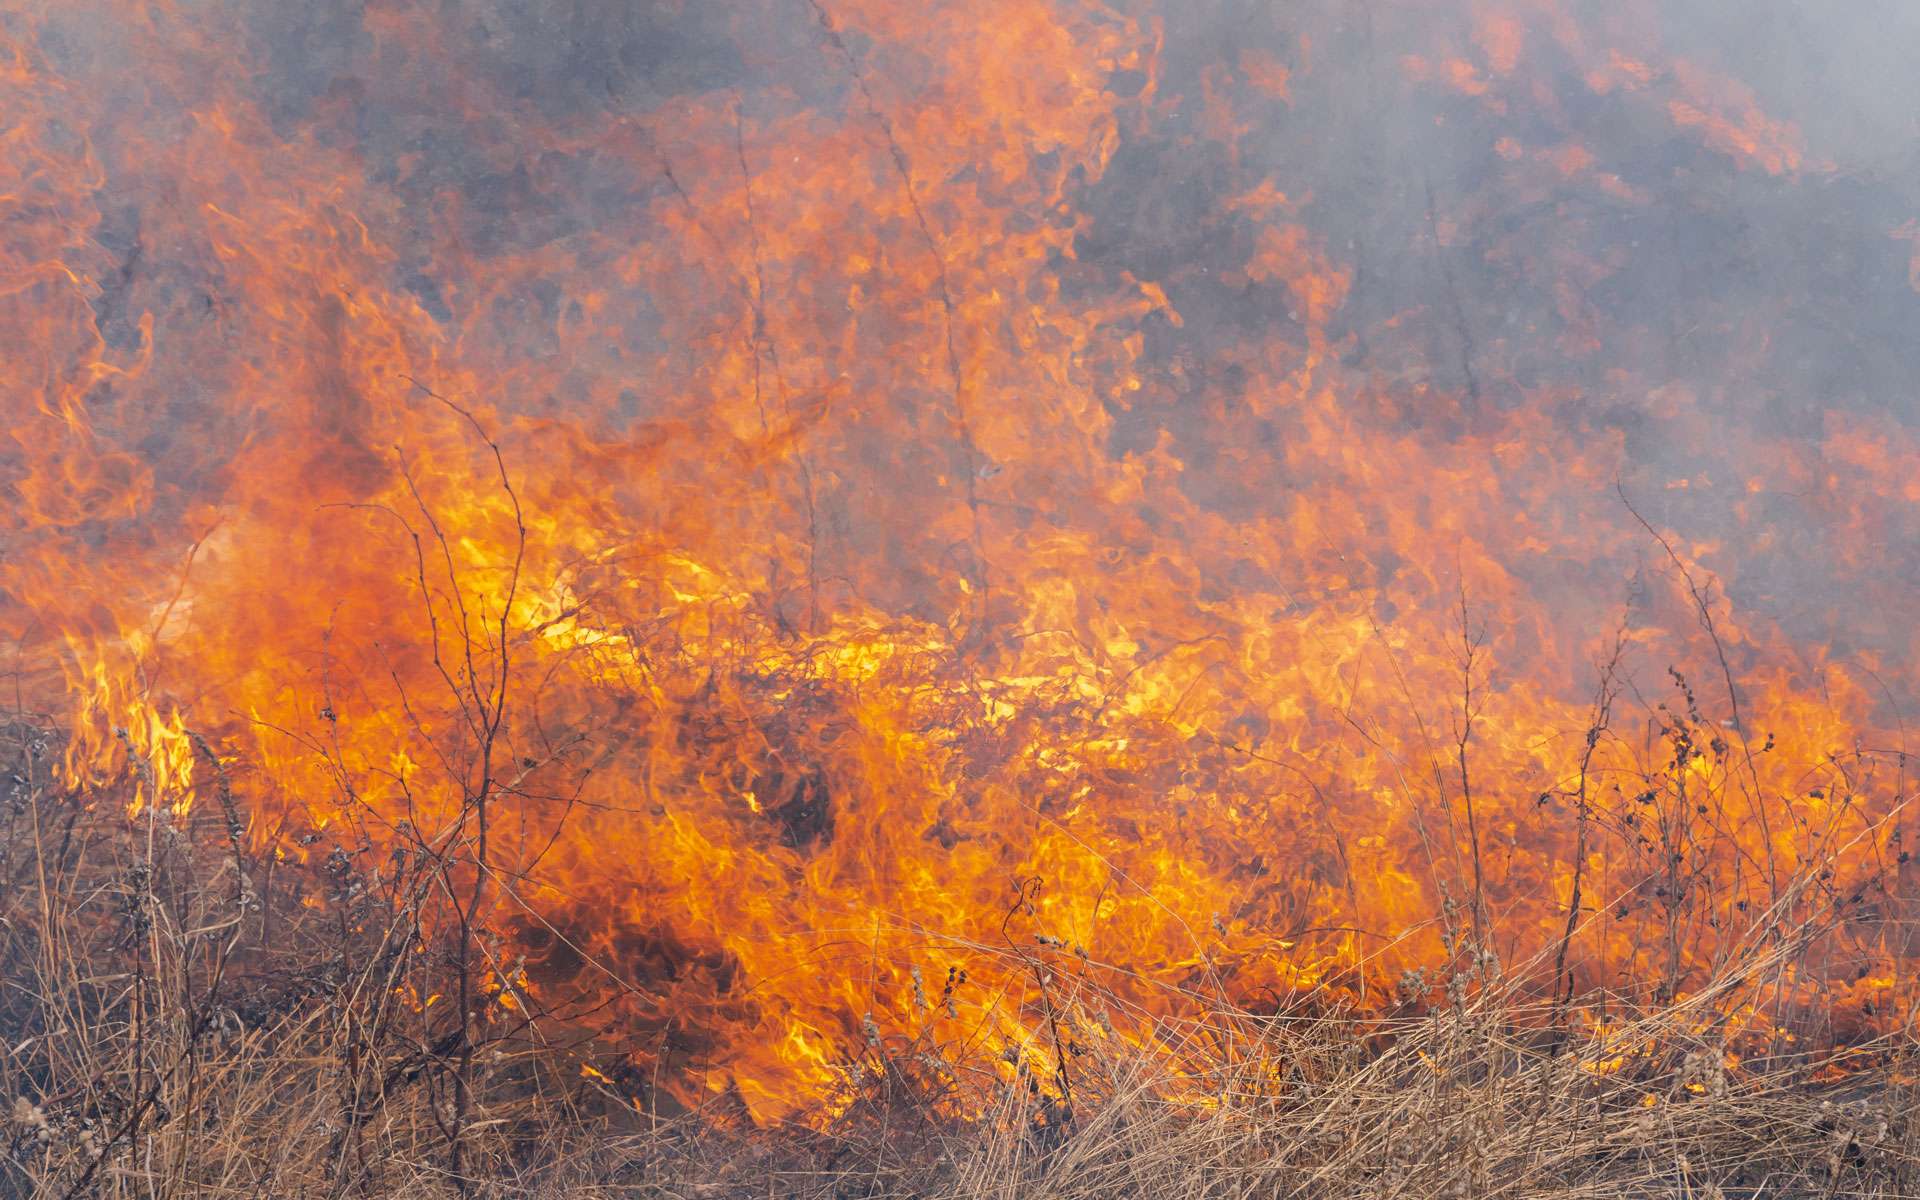 Les conséquences des incendies en Amazonie sont dramatiques © Kamchatka, Envato elements